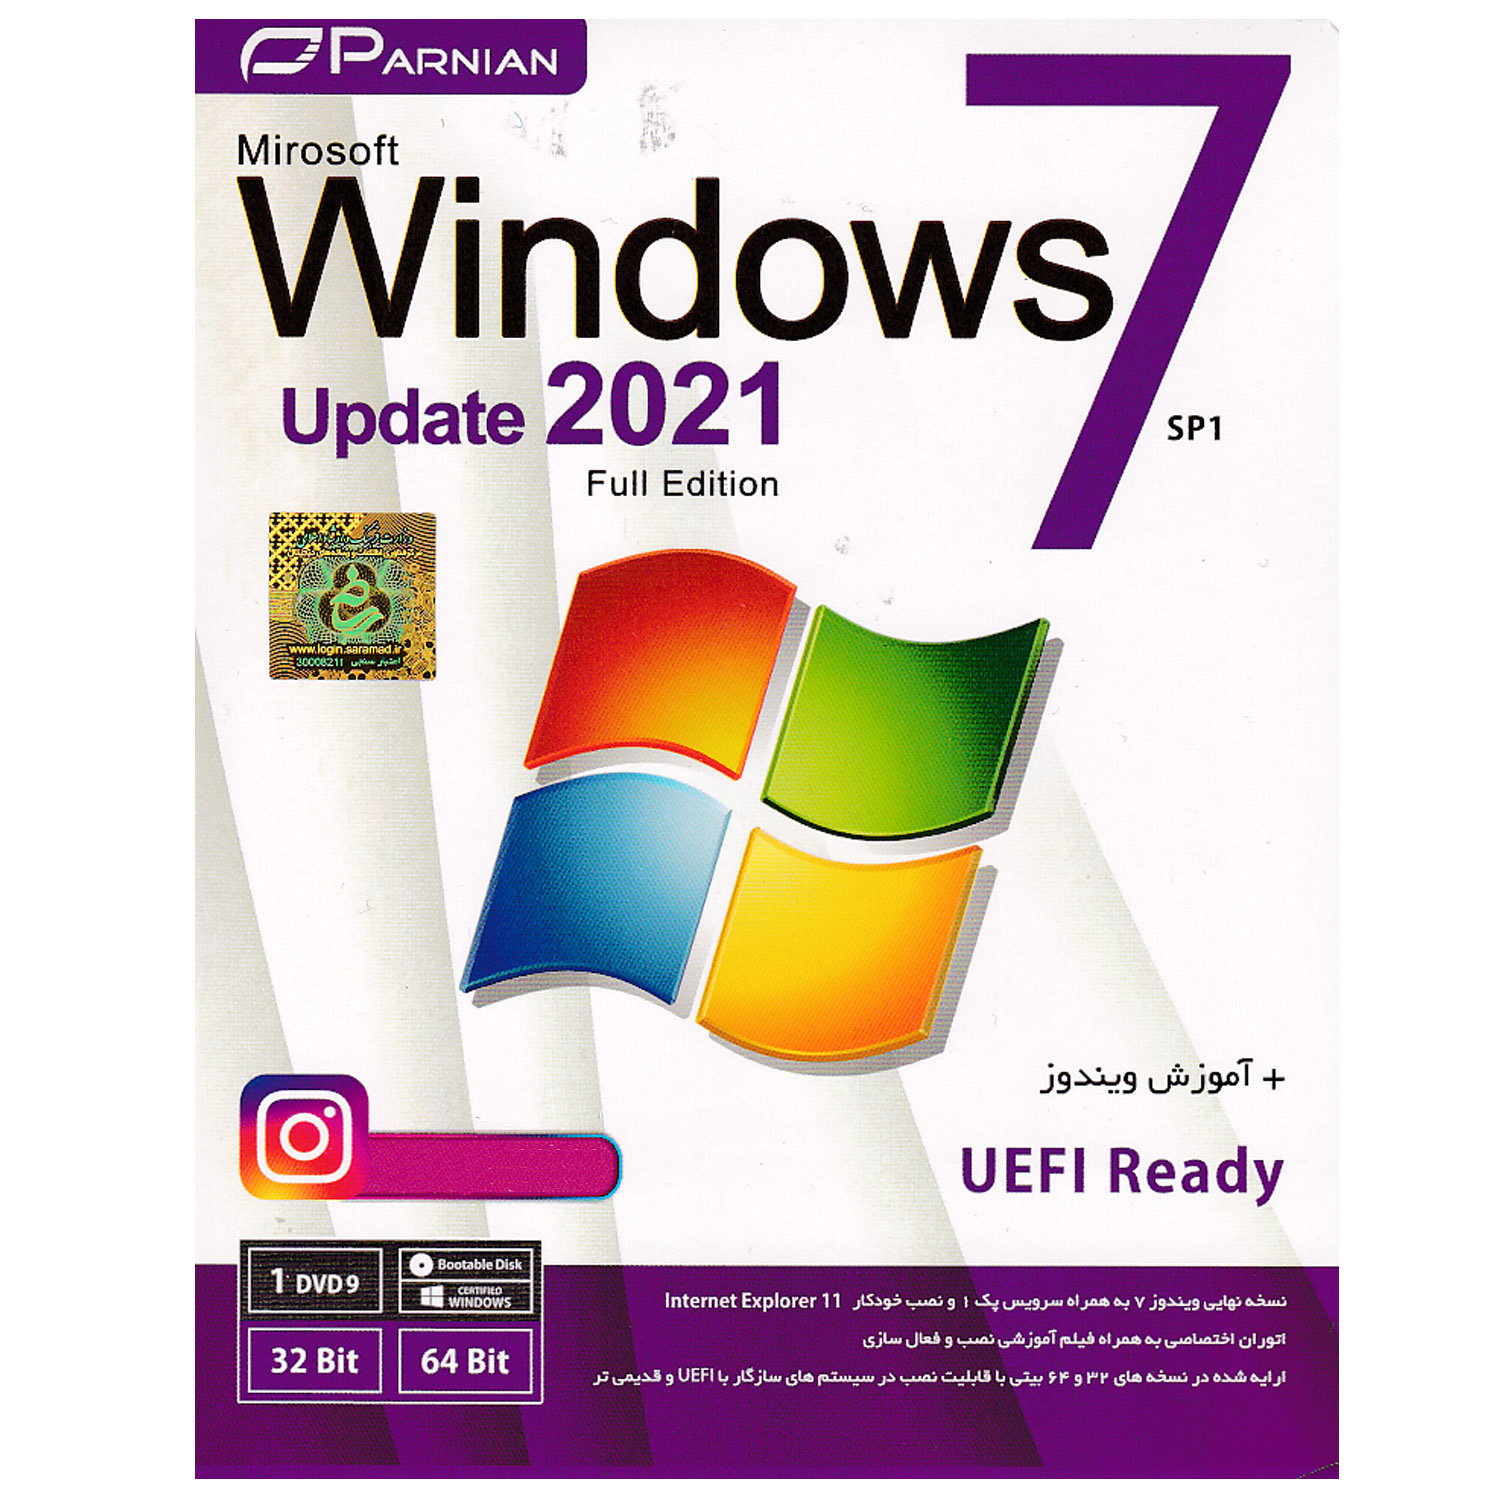 سیستم عامل Widows 7 Full Edition UEFI Update 2021 نشر پرنیان